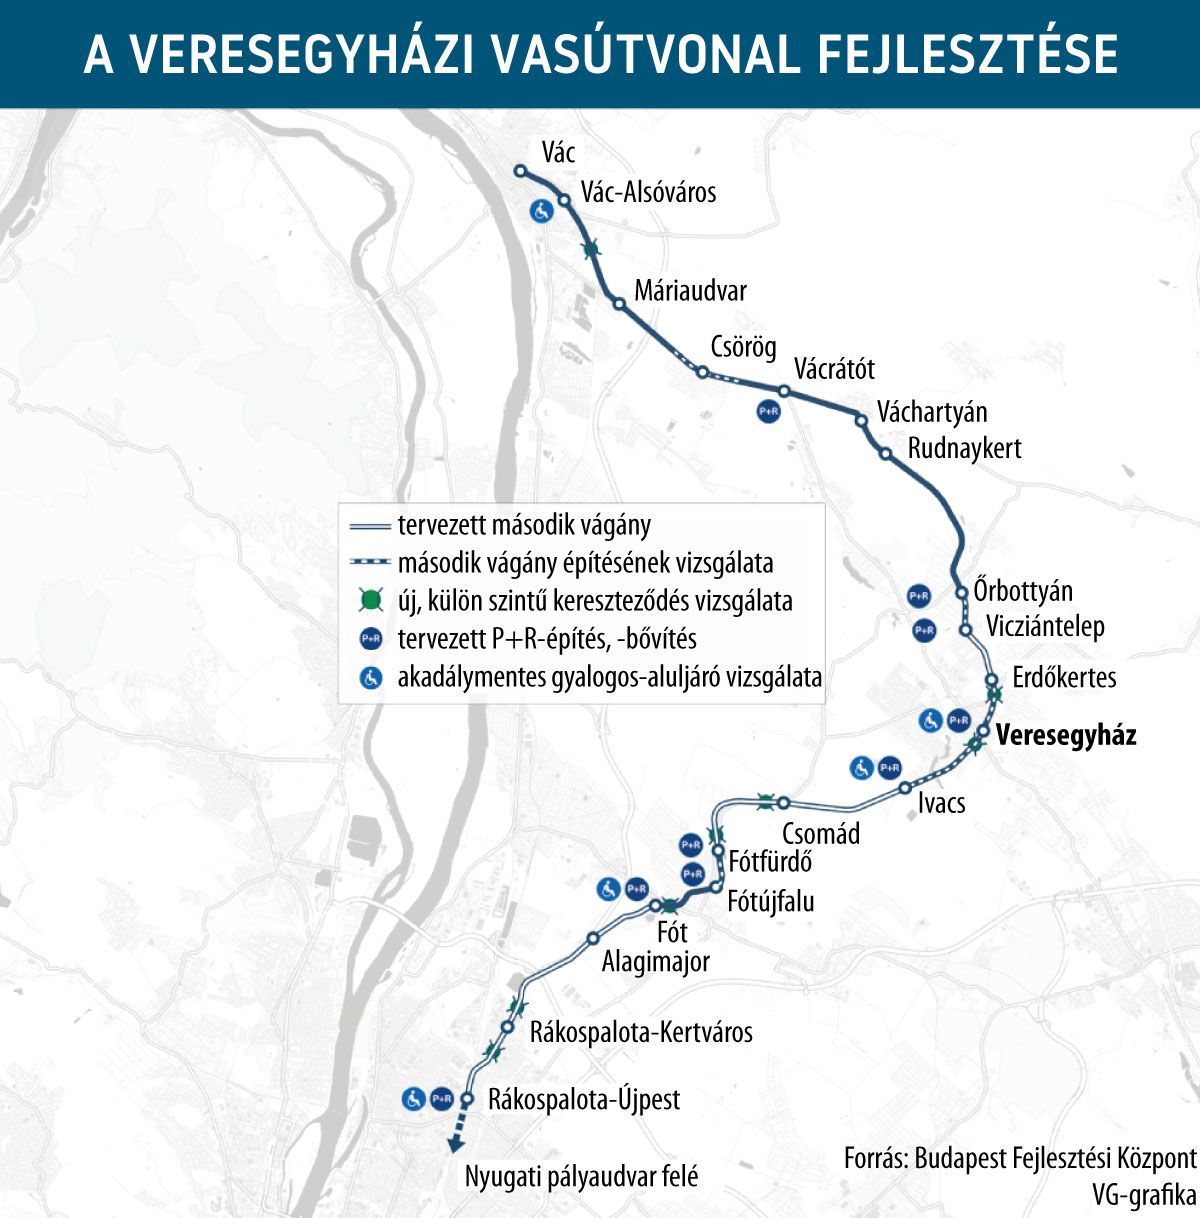 A veresegyházi vasútvonal fejlesztése
